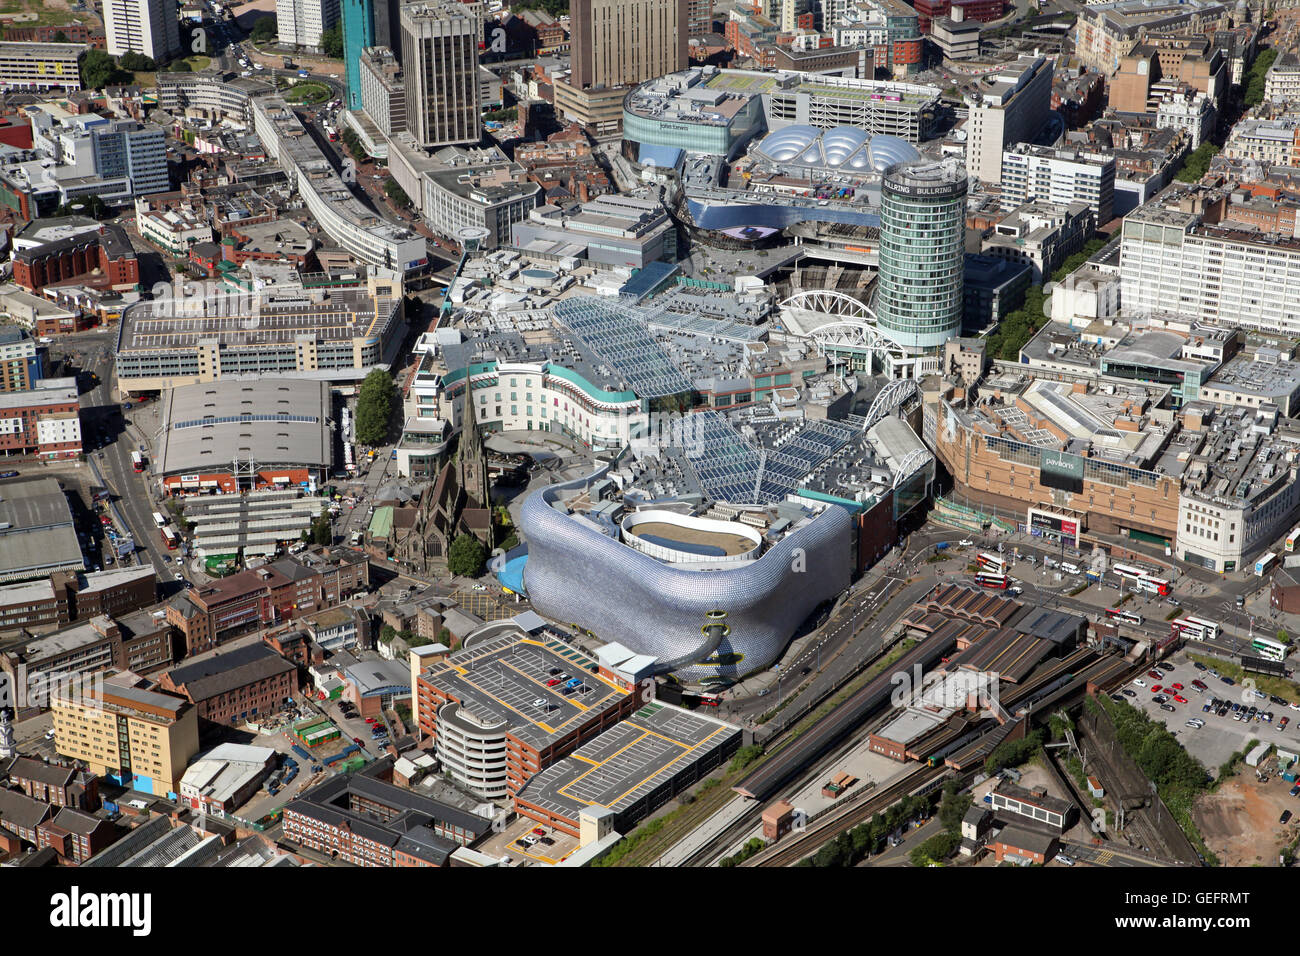 Vista aerea del centro cittadino di Birmingham & Bullring Shopping Centre, Regno Unito Foto Stock